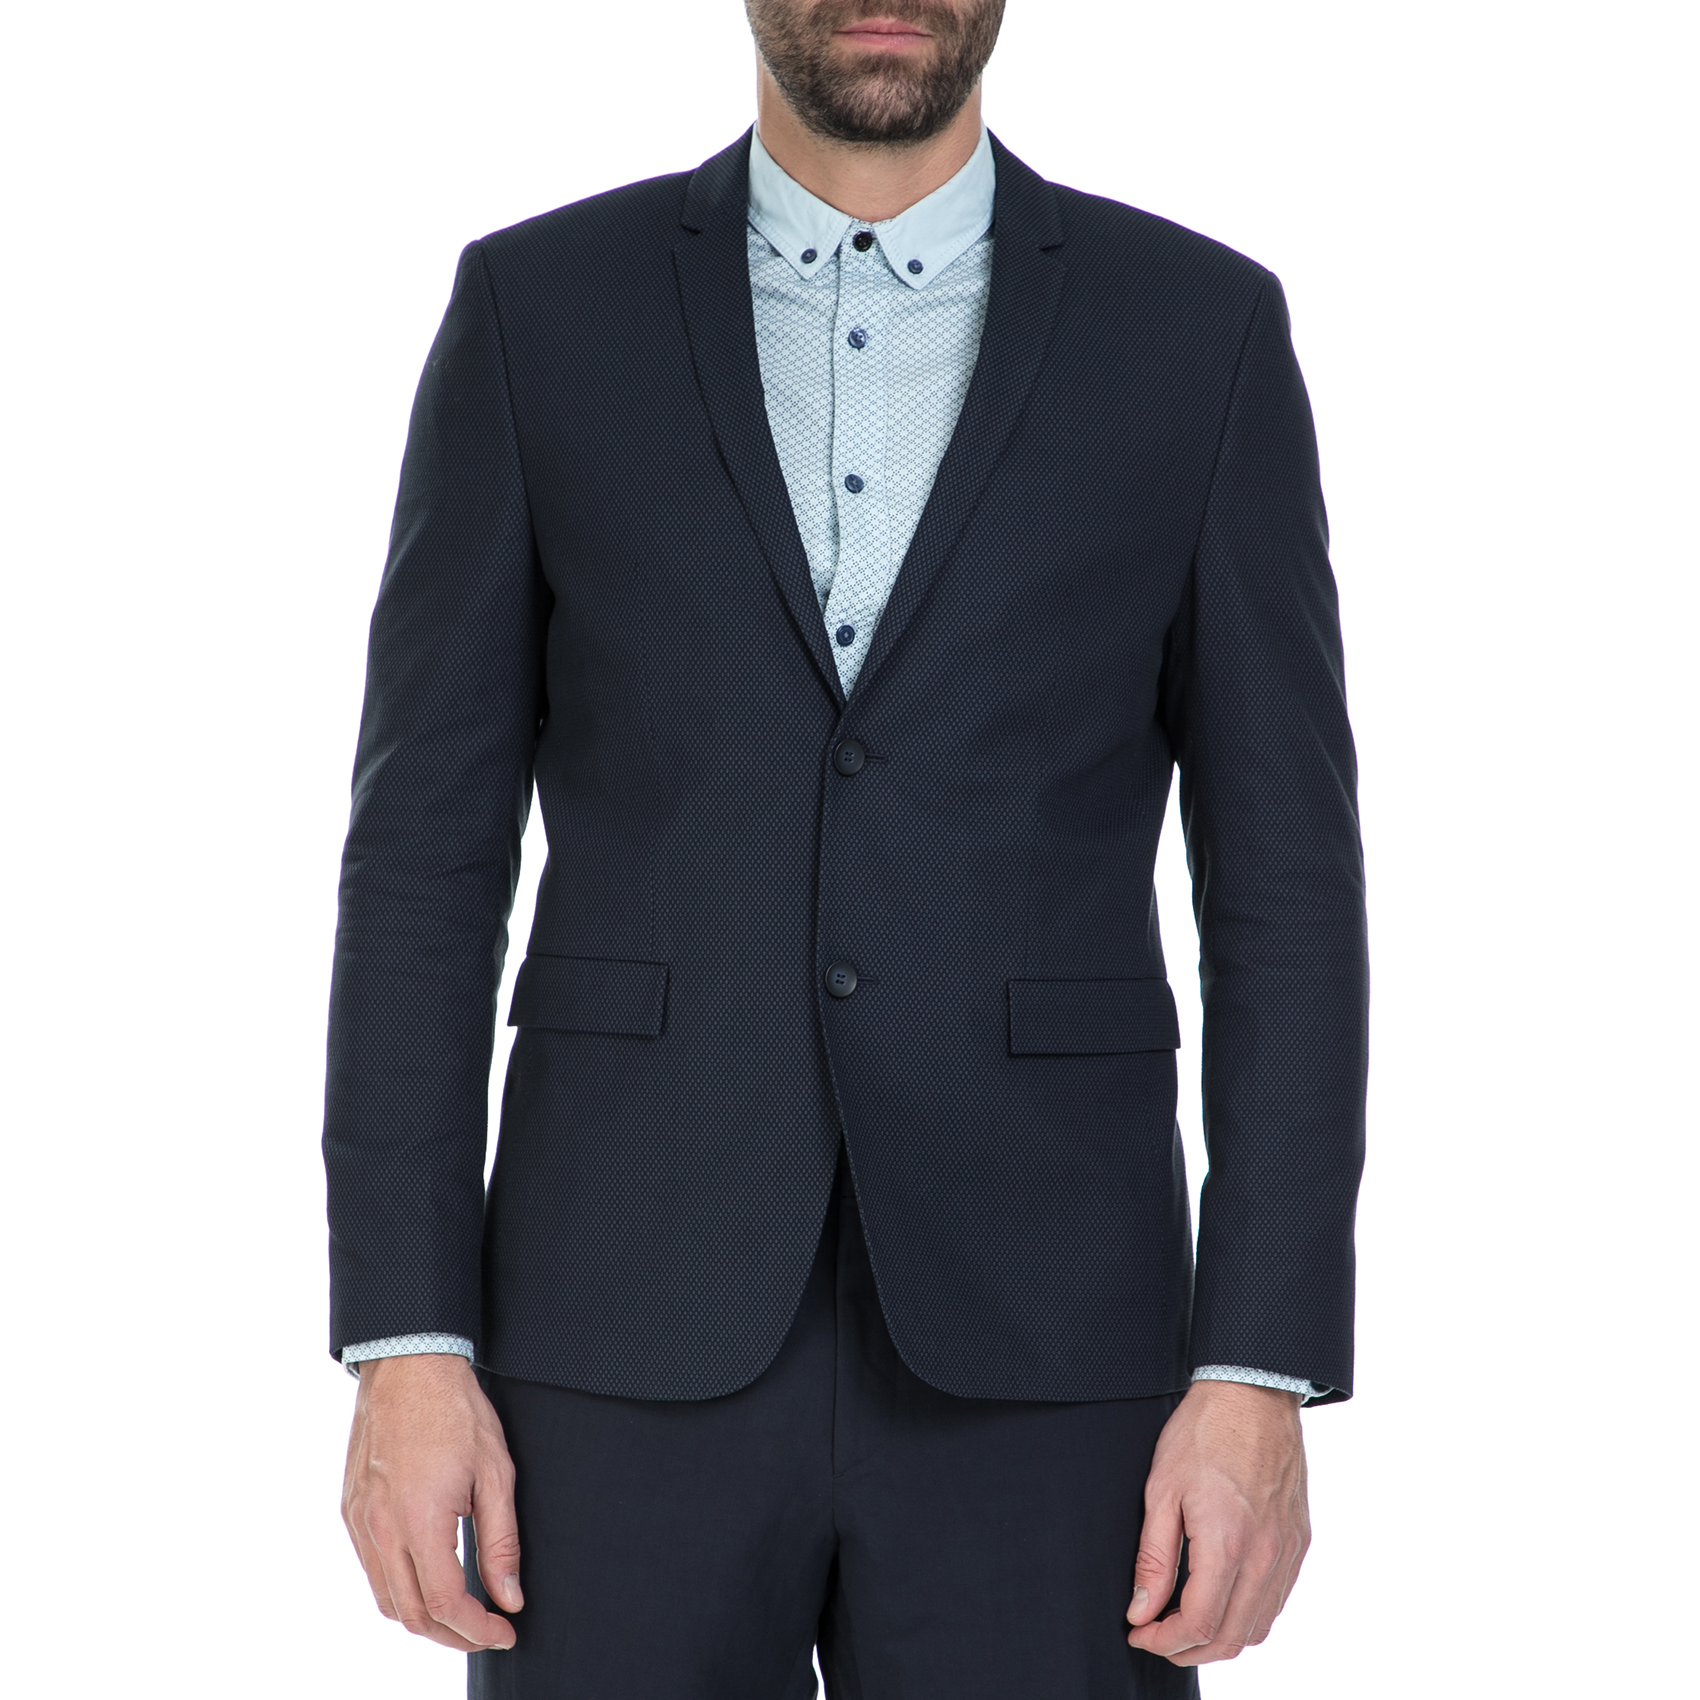 Ανδρικά/Ρούχα/Πανωφόρια/Σακάκια CK - Ανδρικό σακάκι CK BILAN-B μπλε